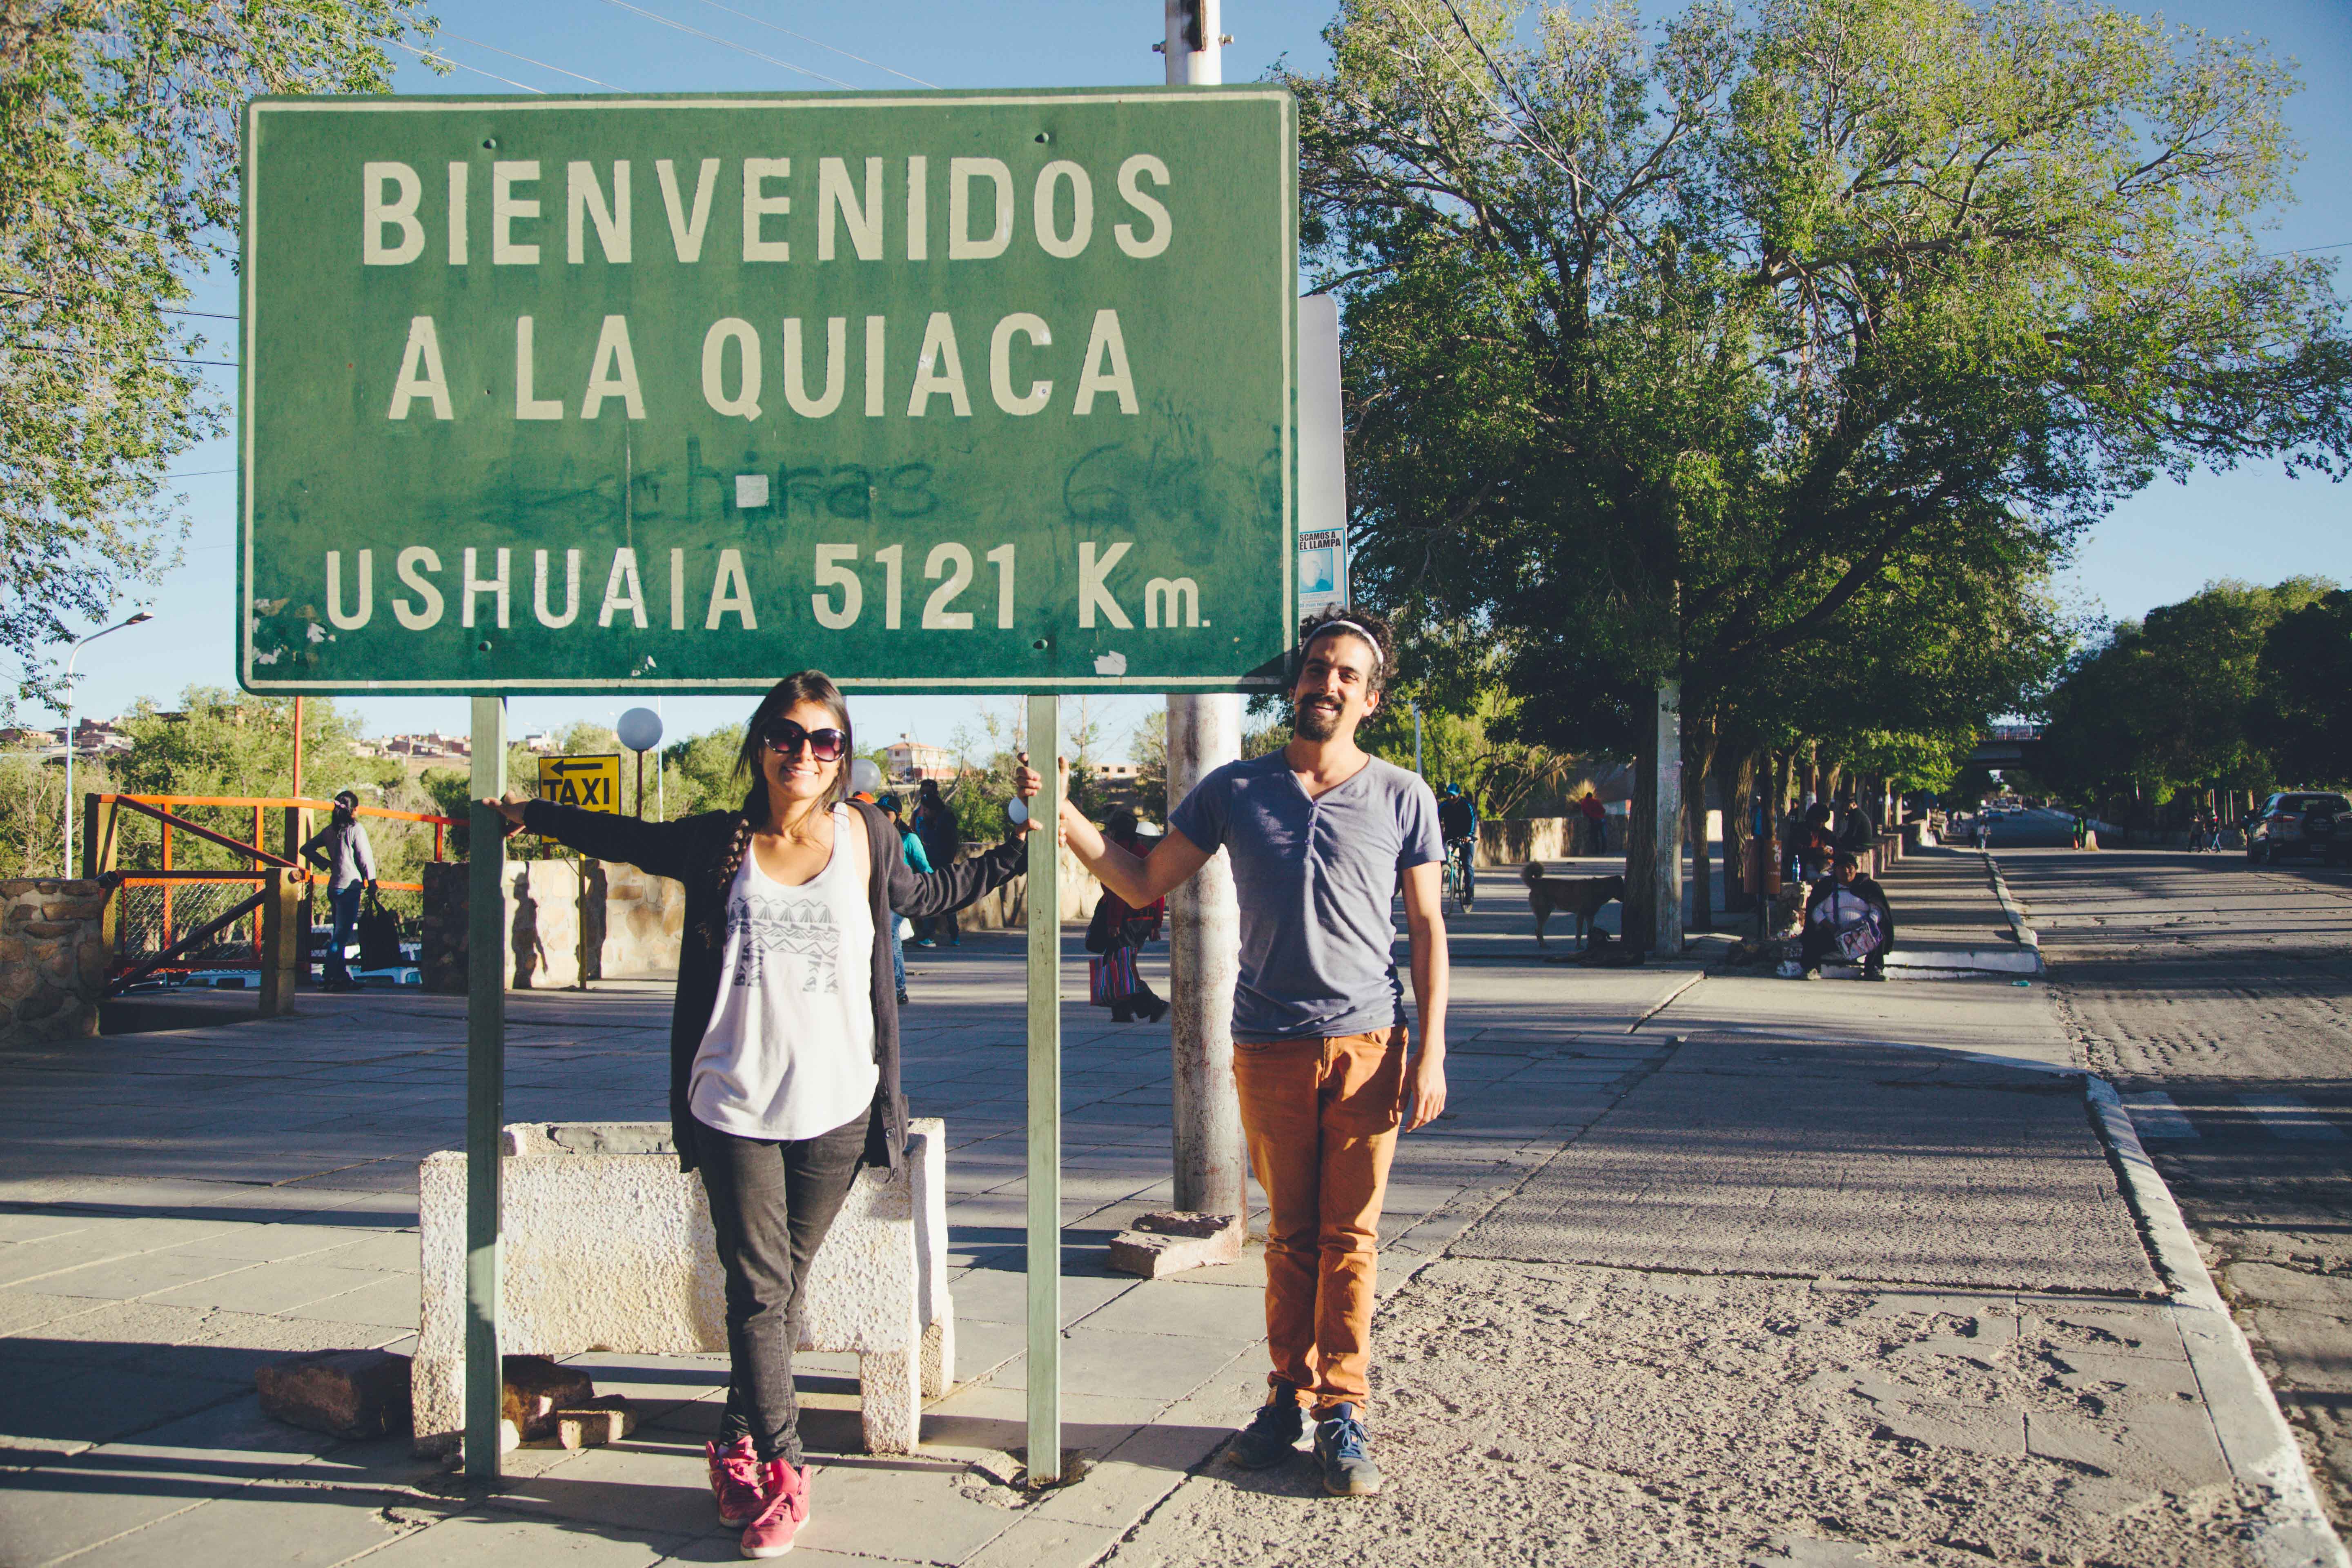 viajar en auto por latinoamerica, la quiaca